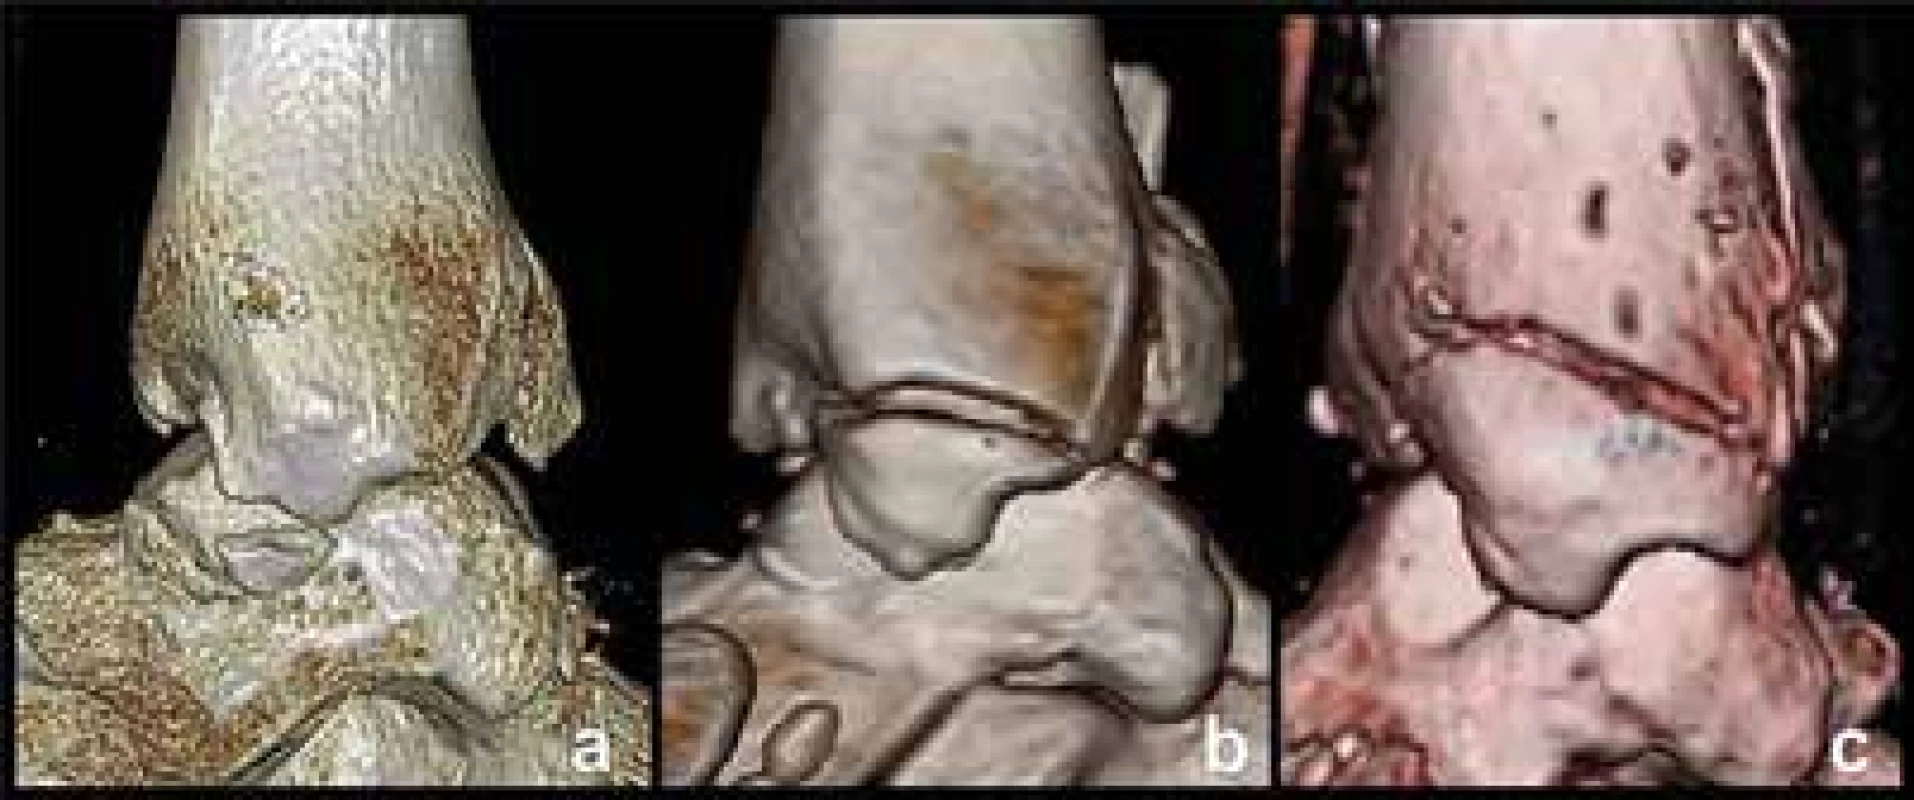 Klasifikace zlomenin mediálního kotníku na 3D CT rekonstrukcích
a – typ 1, zlomenina colliculus anterior, b – typ 2, zlomenina colliculus anterior
a sulcus intercollicularis, c – typ 3, zlomenina obou kolikulů.<br>
Fig. 4. Classification of medial malleolus fractures based on 3D CT reconstructions:
a – type 1, fracture of the anterior colliculus; b – type 2, fracture of the anterior
colliculus and intercollicular groove; c – type 3, fracture of both colliculi.